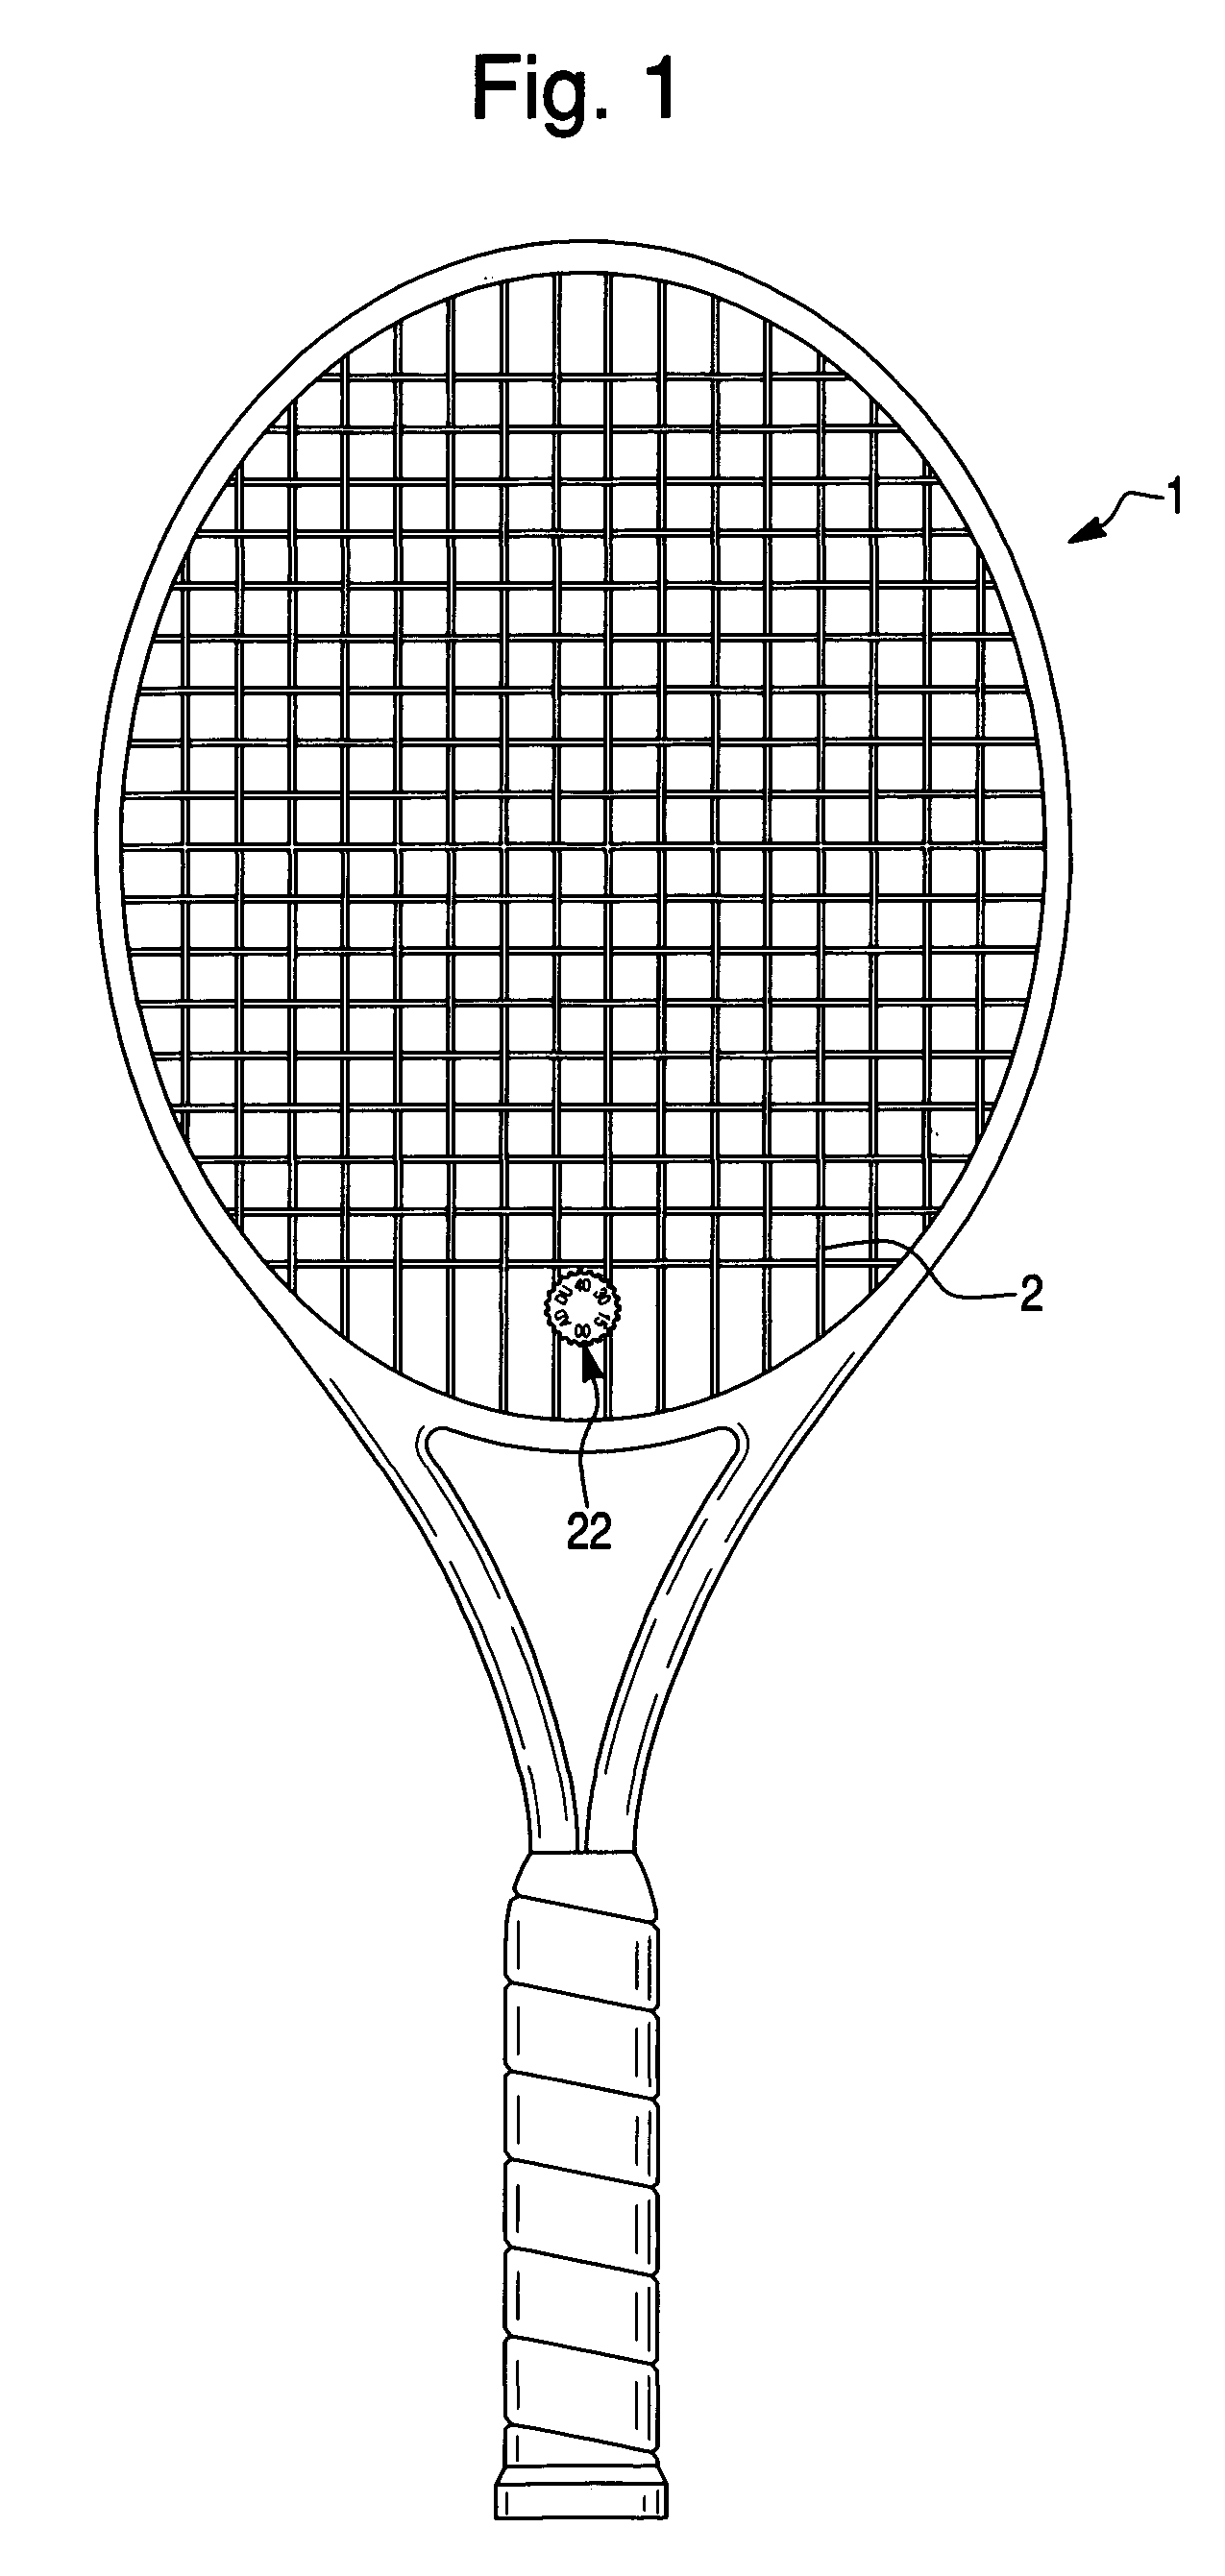 Racquet Sport Score Keeper and Vibration Damper